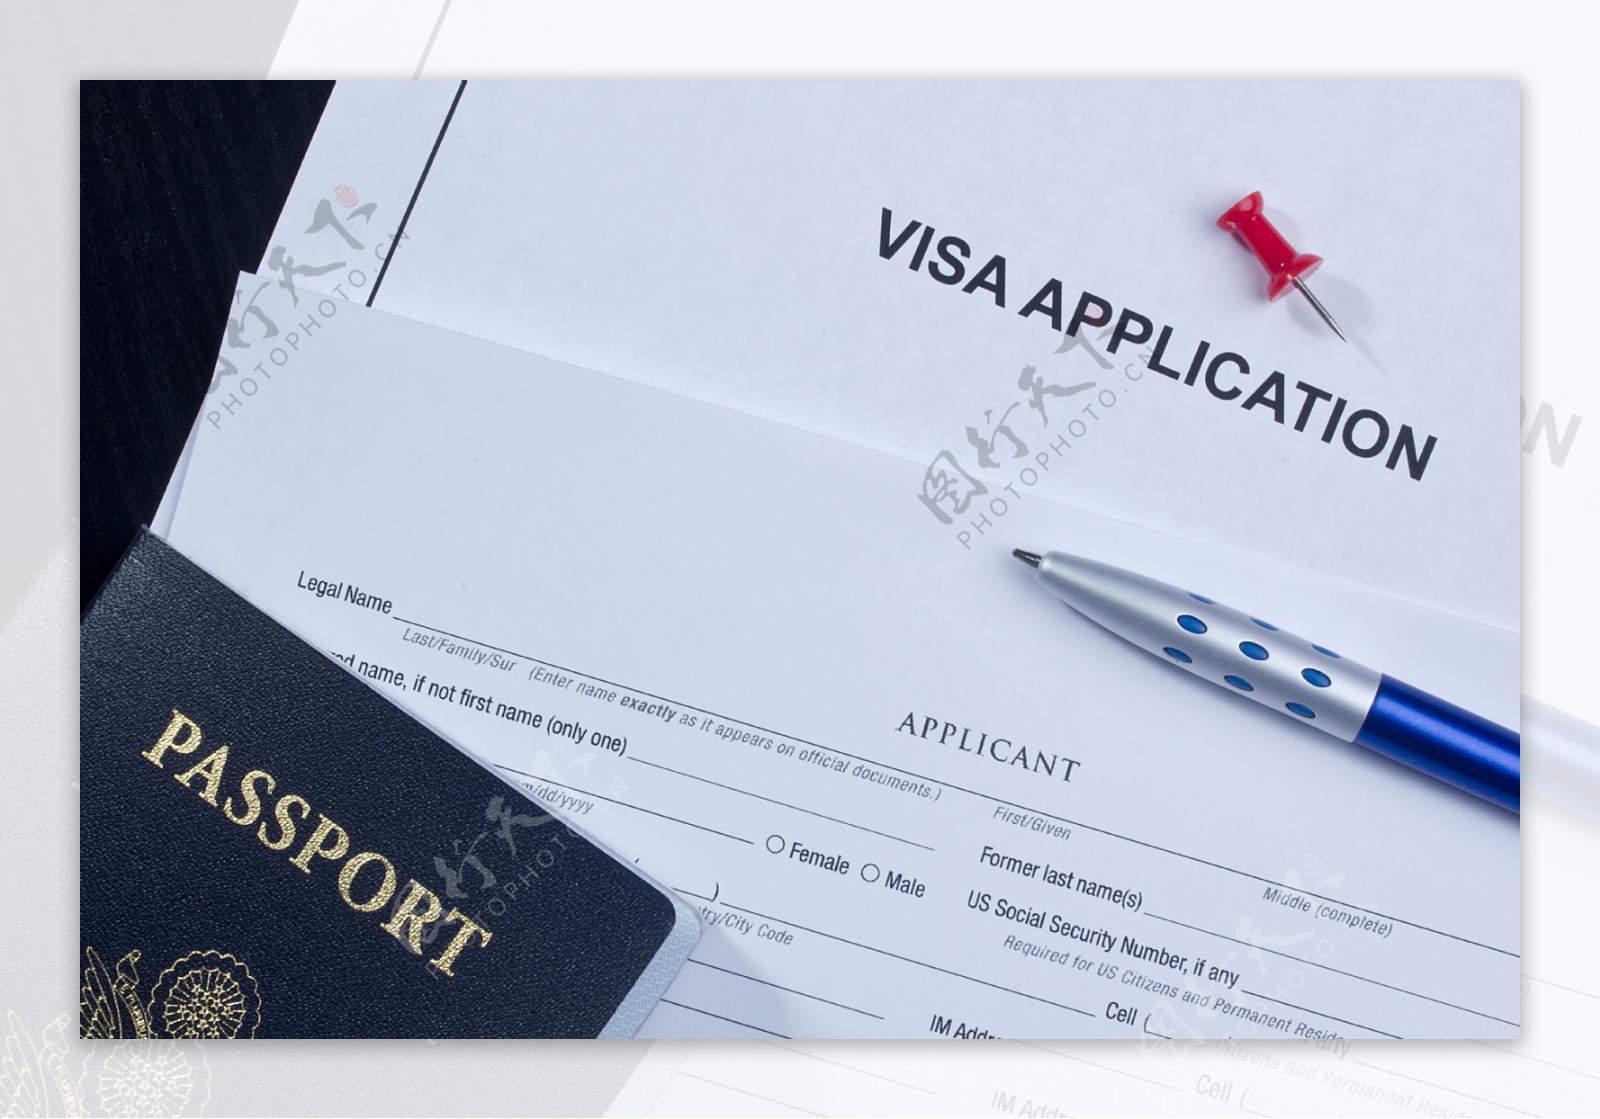 护照证件和笔图片